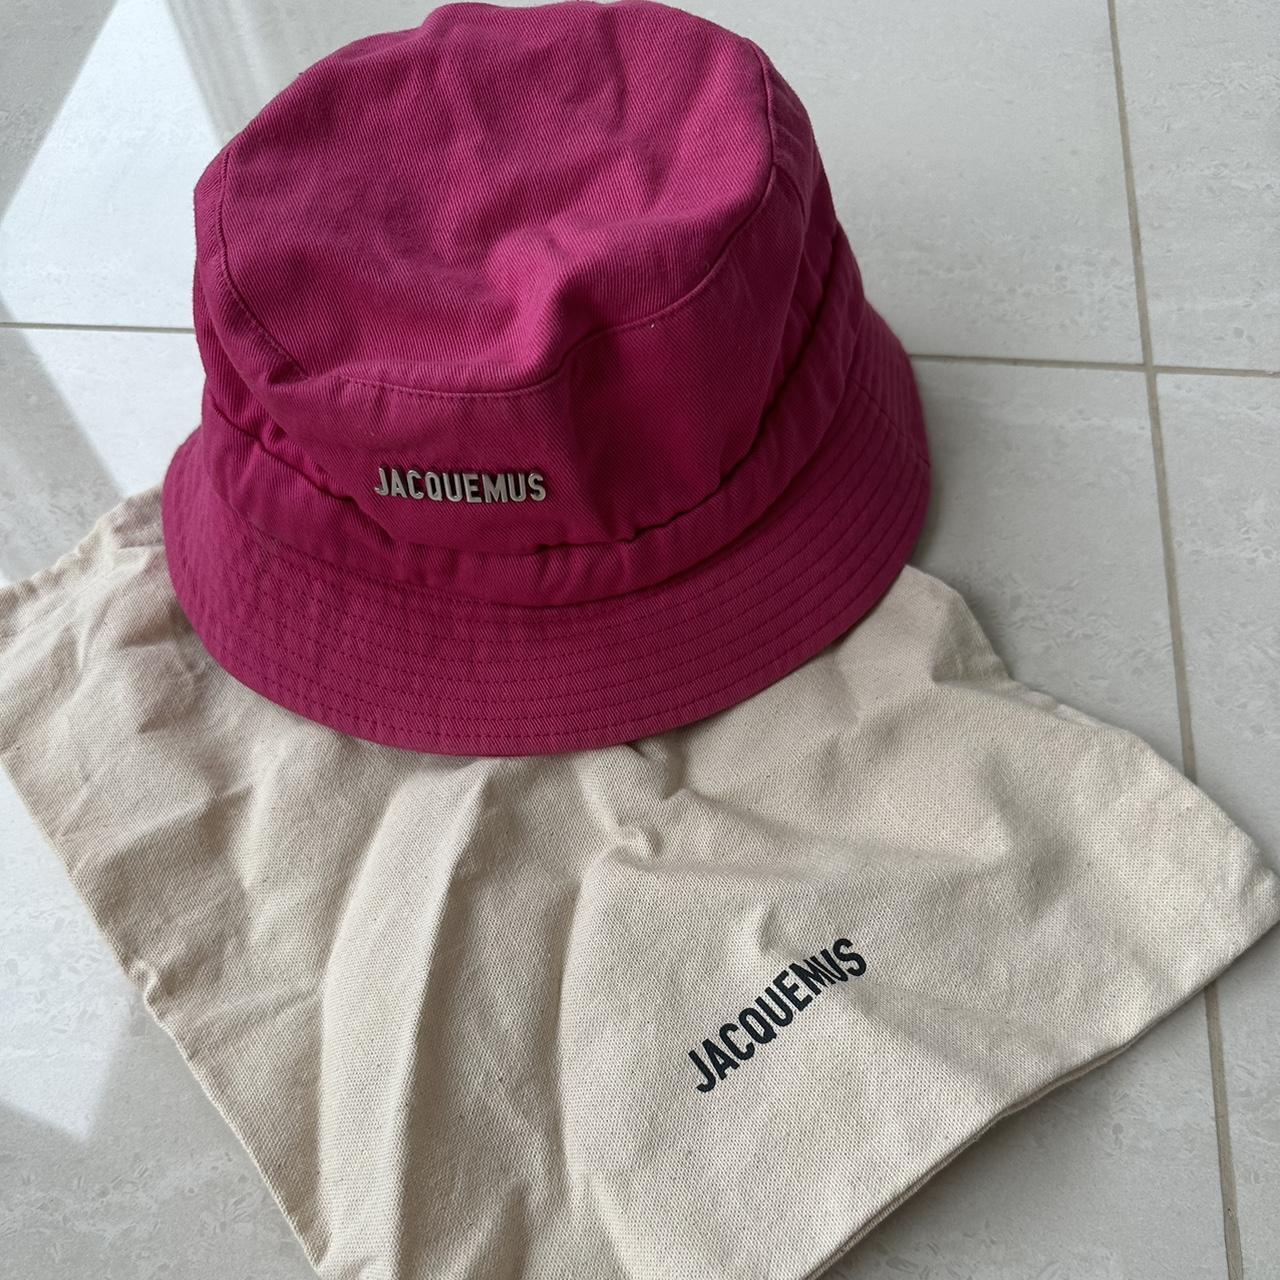 Jacquemus Women's Pink Hat